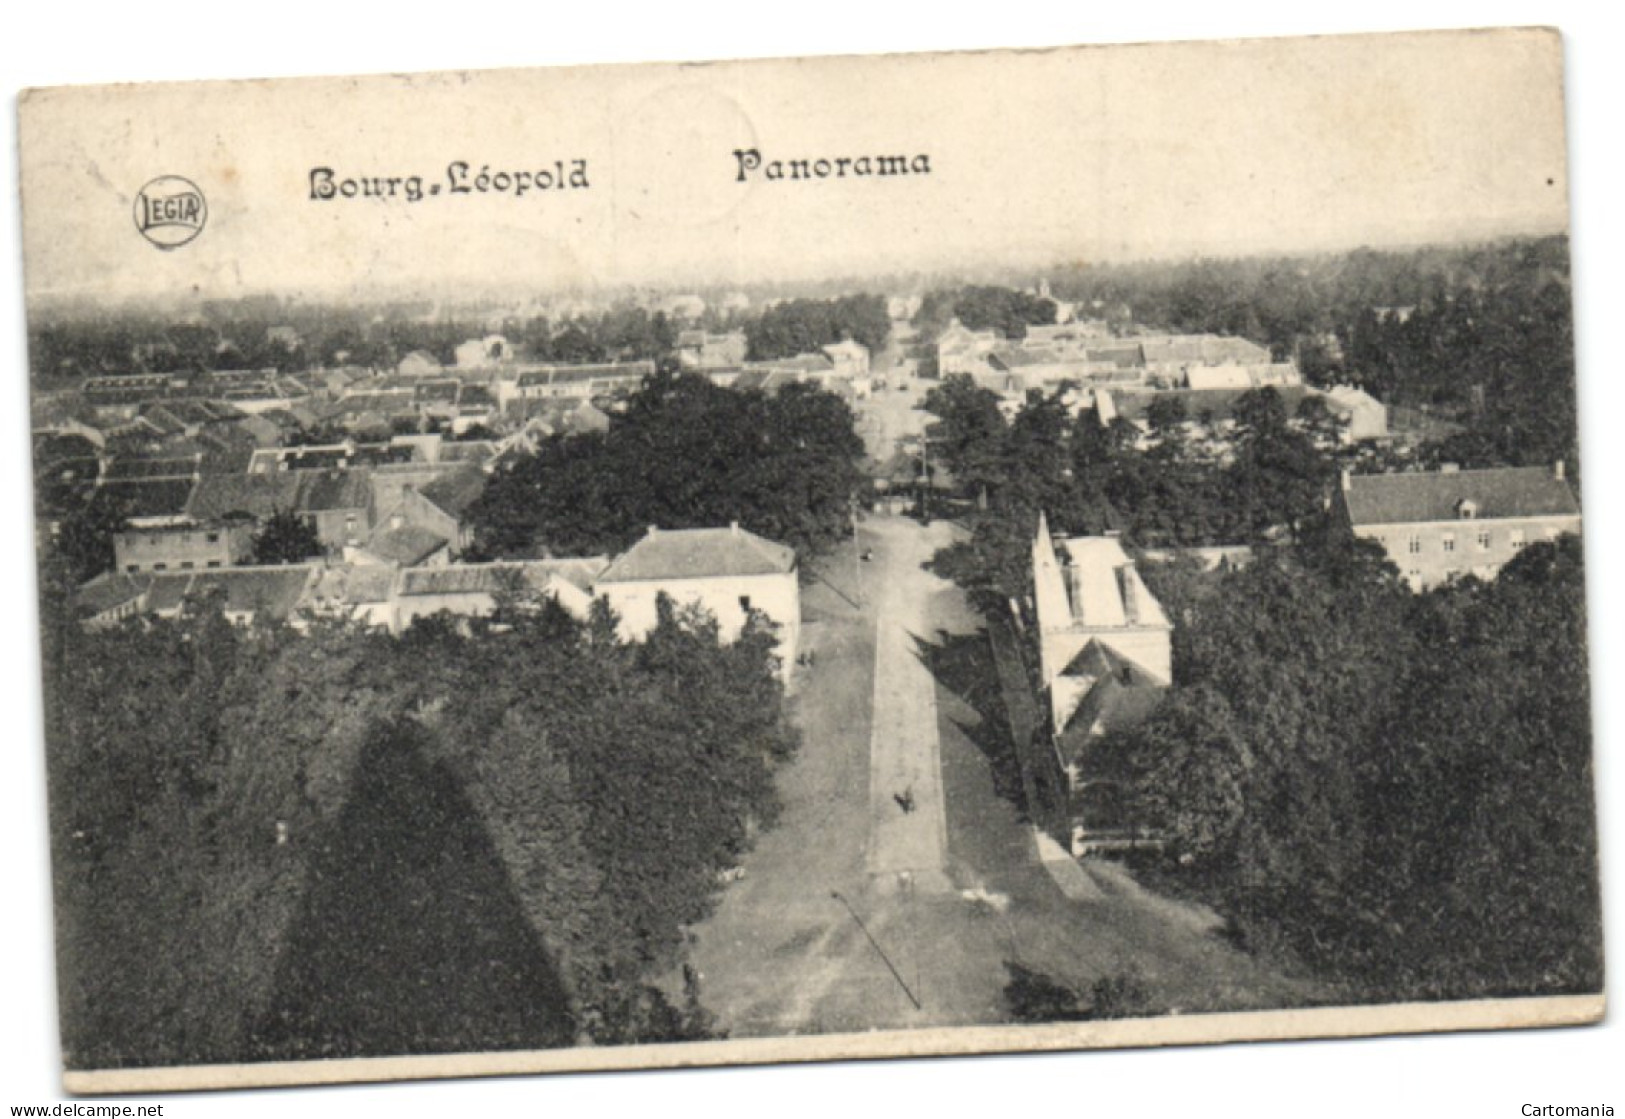 Bourge-Leopold - Panorama - Leopoldsburg